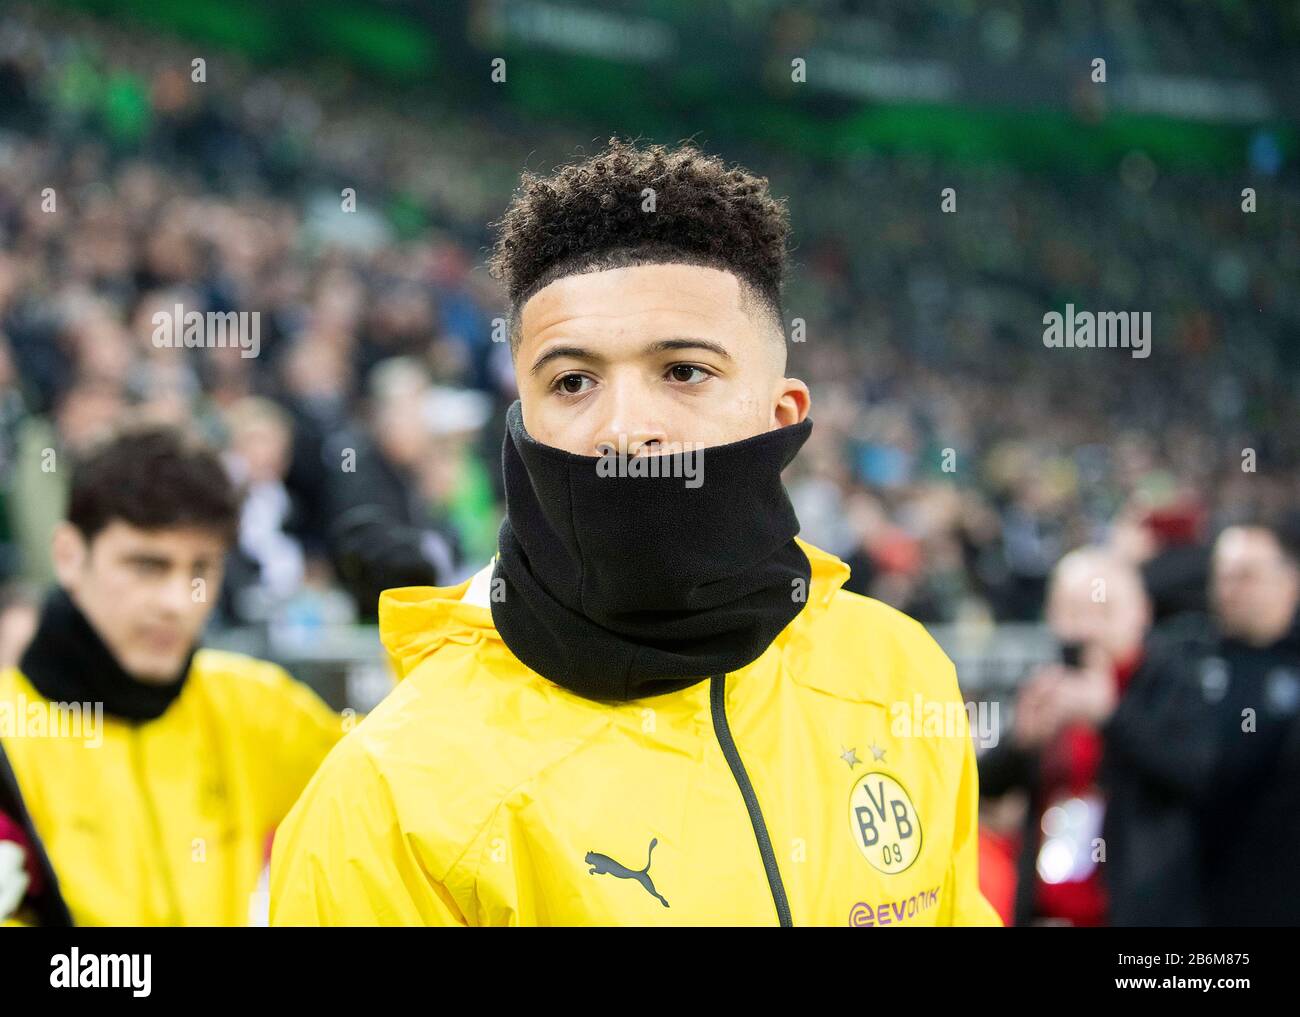 Jadon SANCHO (DO) avec écharpe à anneaux, masque facial, football 1.  Bundesliga, 25ème jour de jumelage, Borussia Monchengladbach (MG) - Borussia  Dortmund (DO) 1: 2, le 7 mars 2020 en Borussia Monchengladbach/Allemagne.